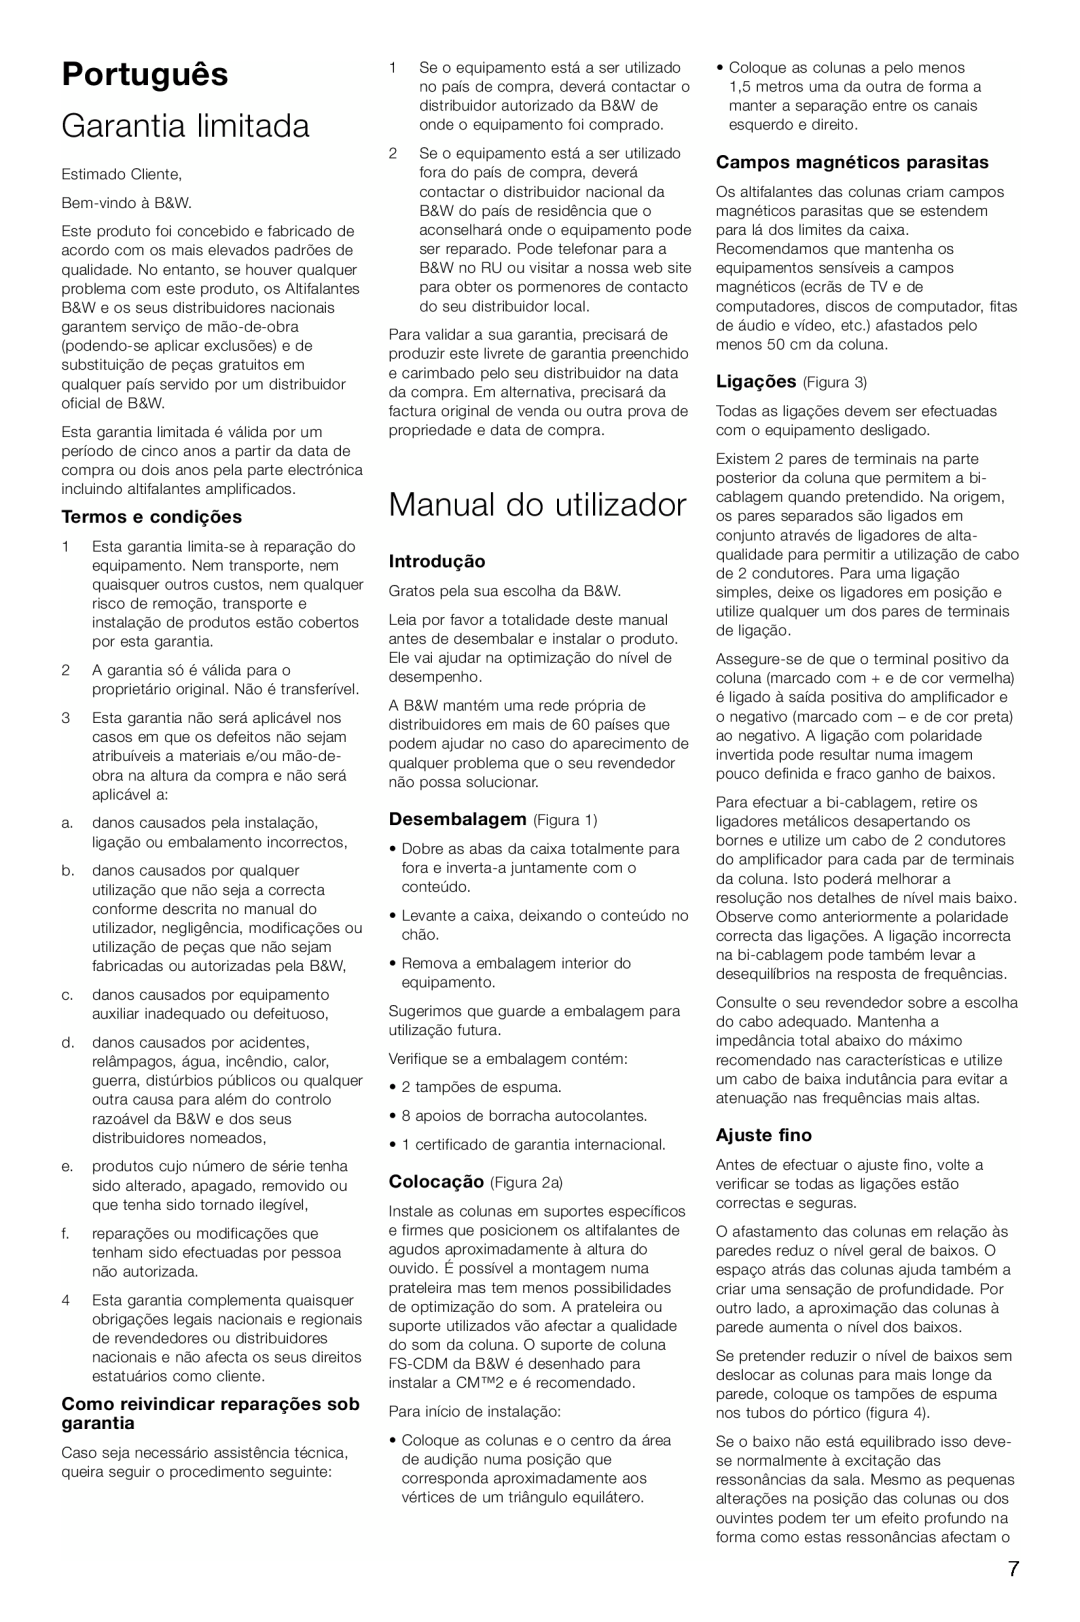 Bowers & Wilkins CM2 Português, Garantia limitada, Manual do utilizador, Termos e condições, Introdução, Ajuste fino 